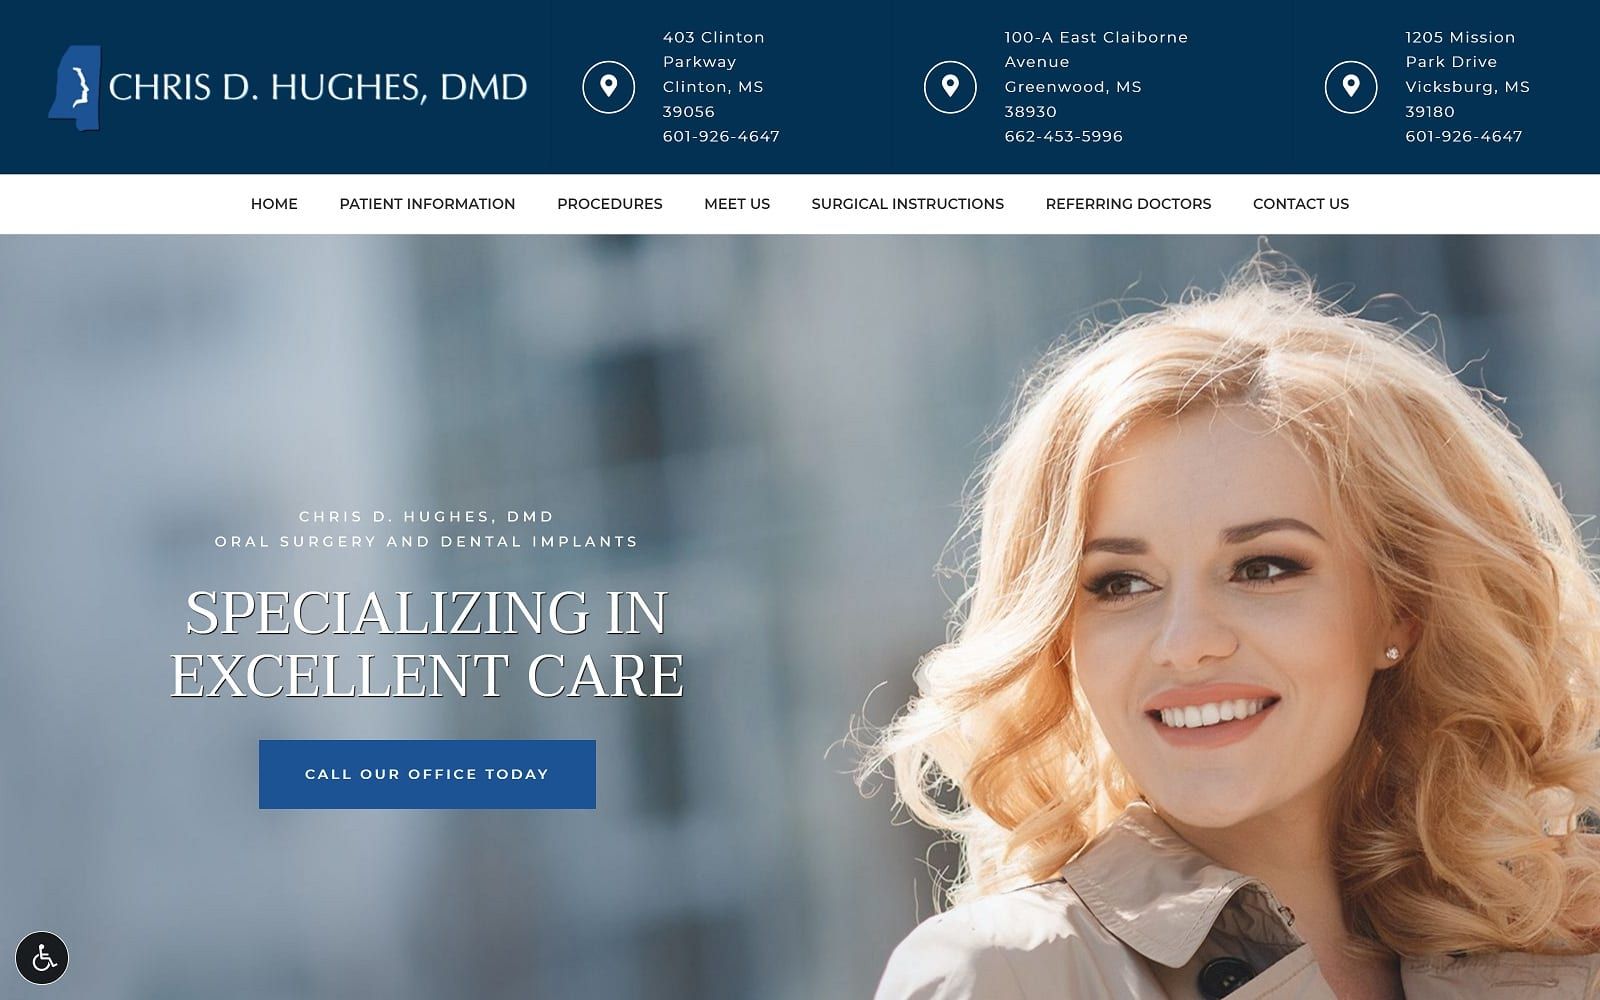 The Screenshot of Dr. Chris D. Hughes, DMD chrishughesoralsurgery.com Website